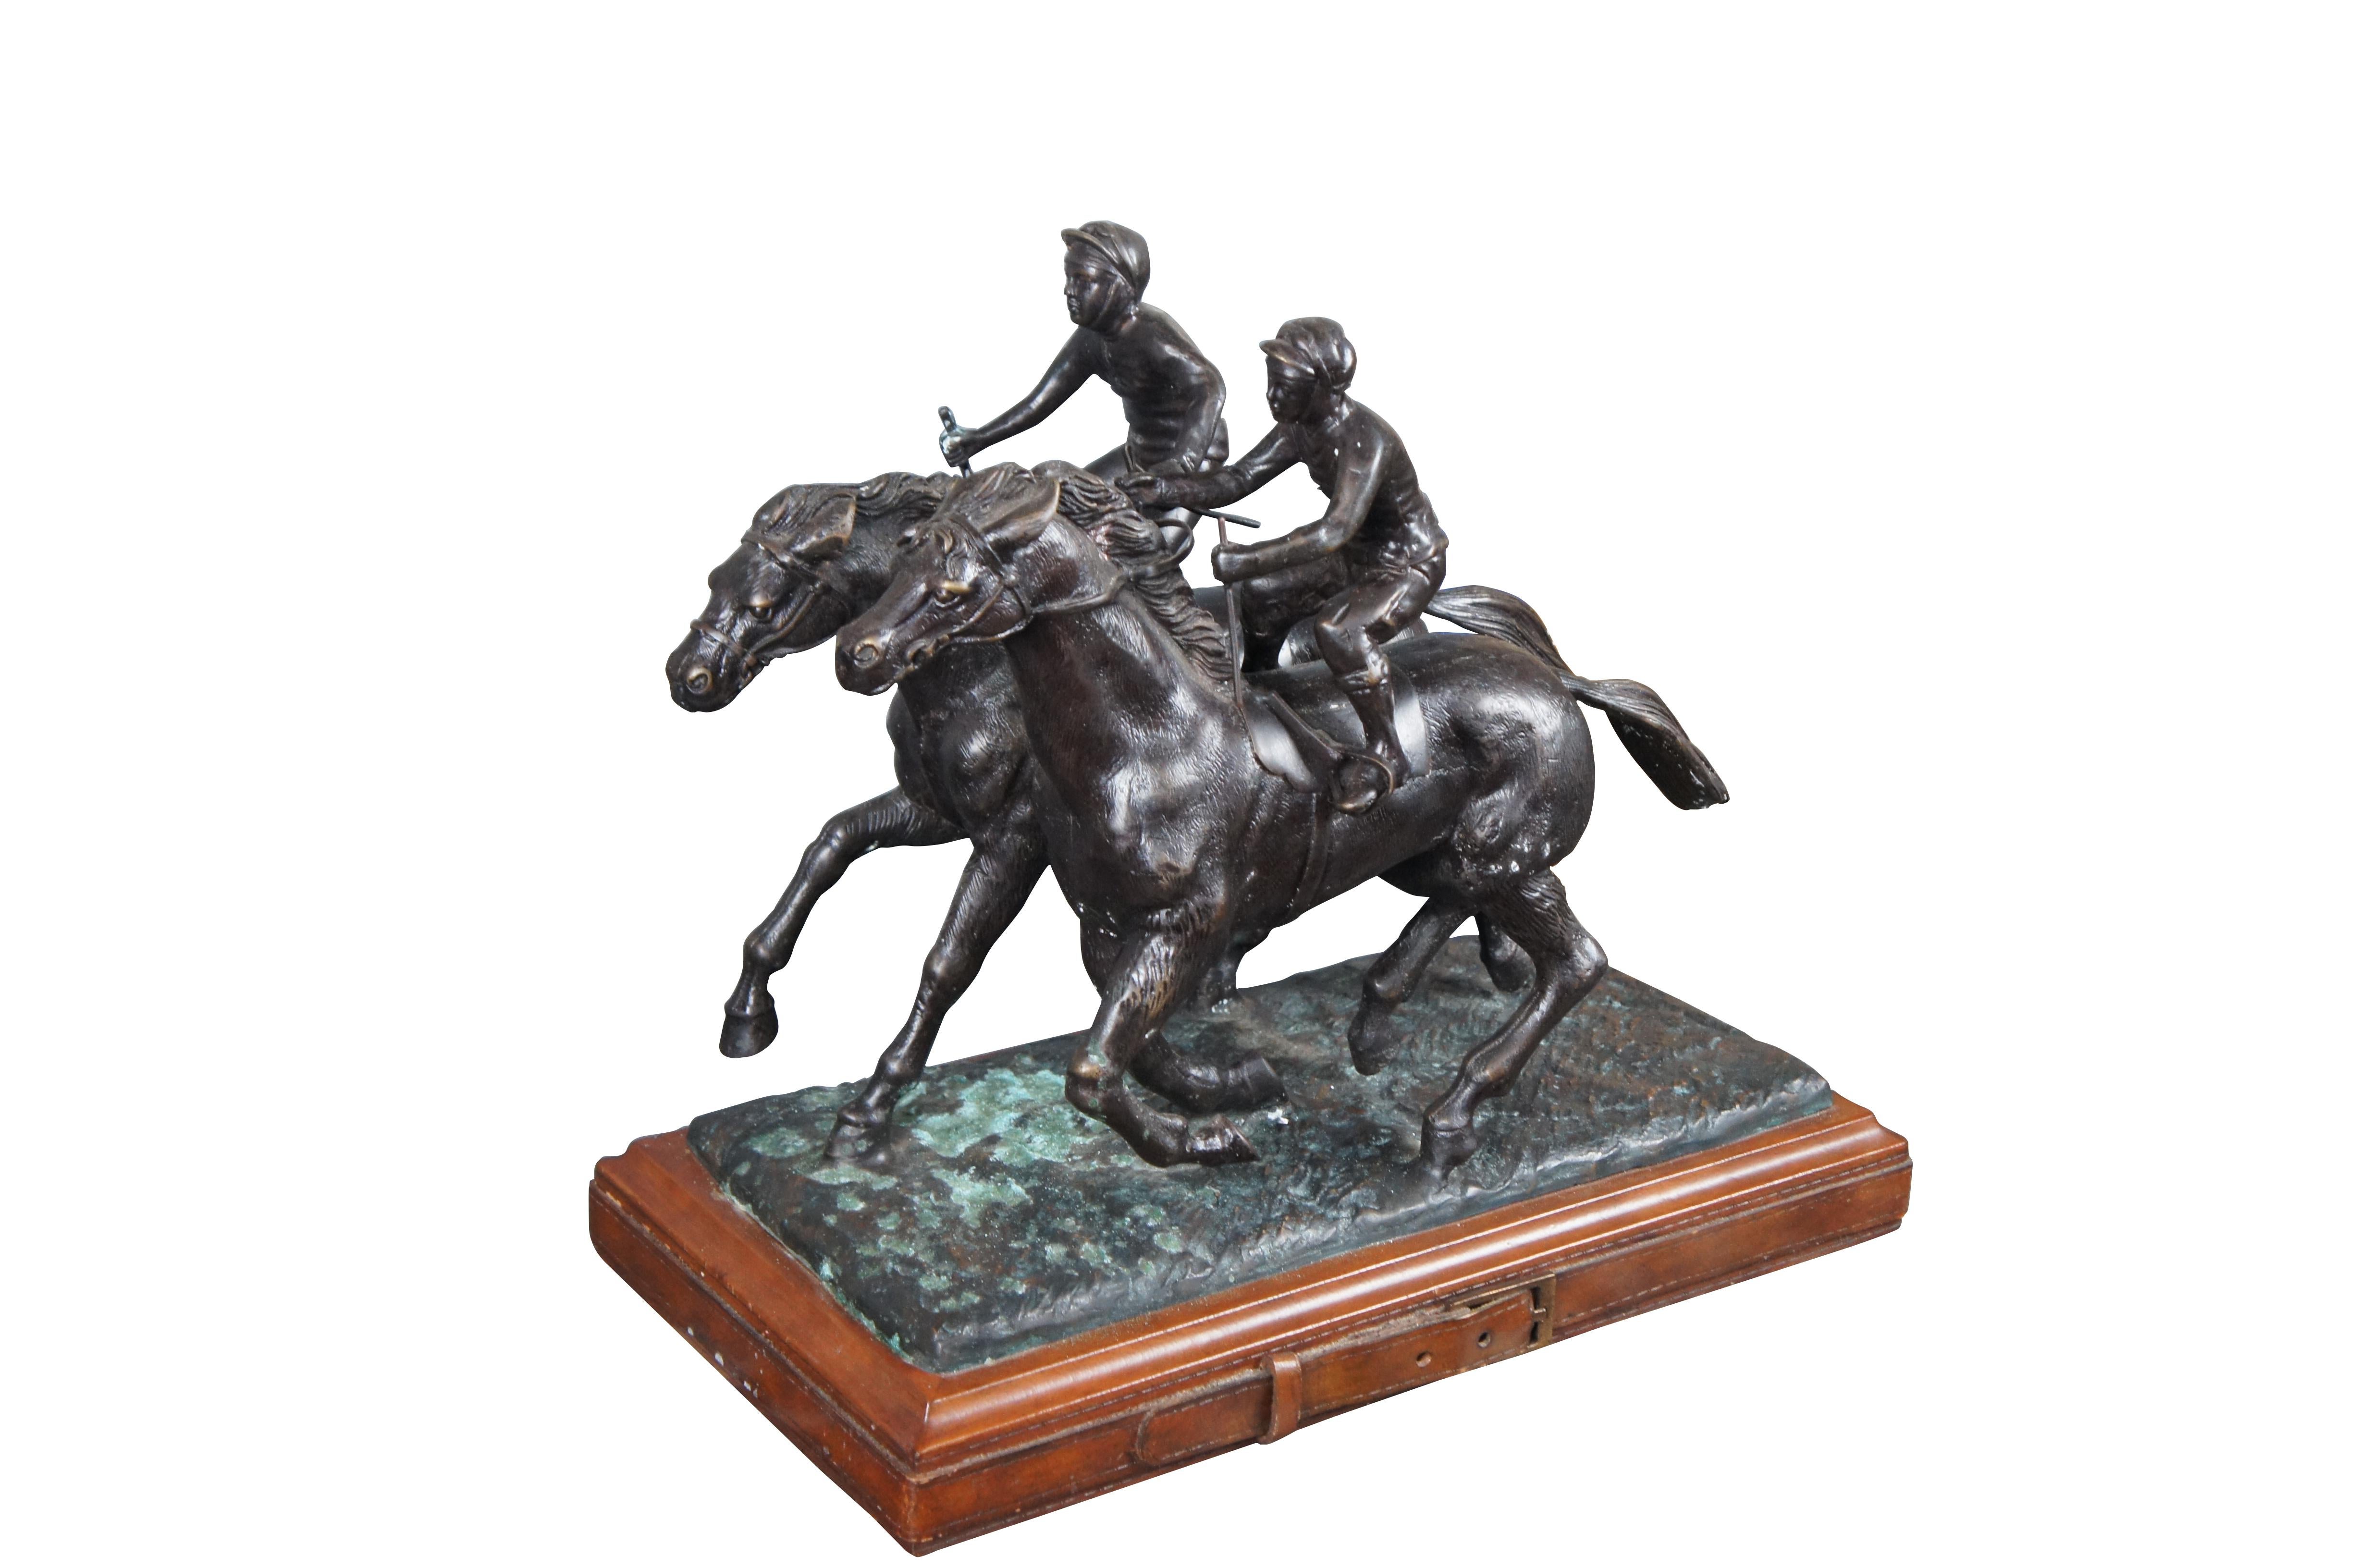 Vintage Maitland Smith Bronze zwei Jockeys auf Pferden Pferderennen Statue mit Leder gewickelt Basis.

Abmessungen:
17,5